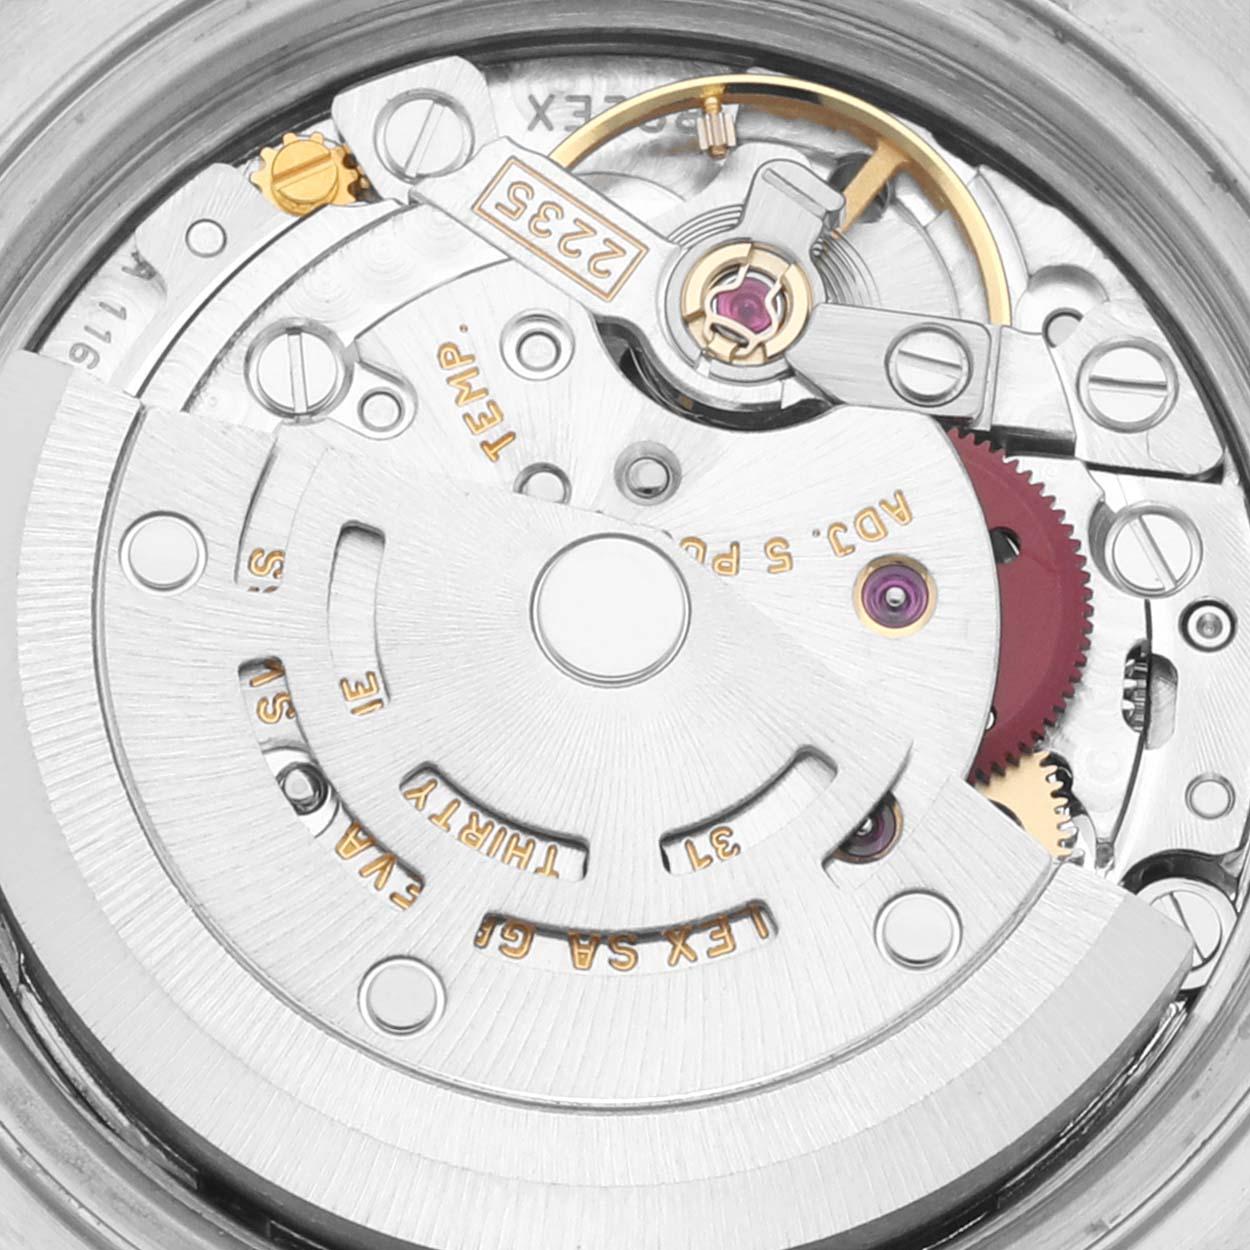 Rolex Datejust 26 Stahl Weiß Gold Tapestry Dial Damenuhr 79174 Box Papiere. Offiziell zertifiziertes Chronometerwerk mit automatischem Aufzug. Austerngehäuse aus Edelstahl mit einem Durchmesser von 26.0 mm. Rolex Logo auf einer Krone. Geriffelte